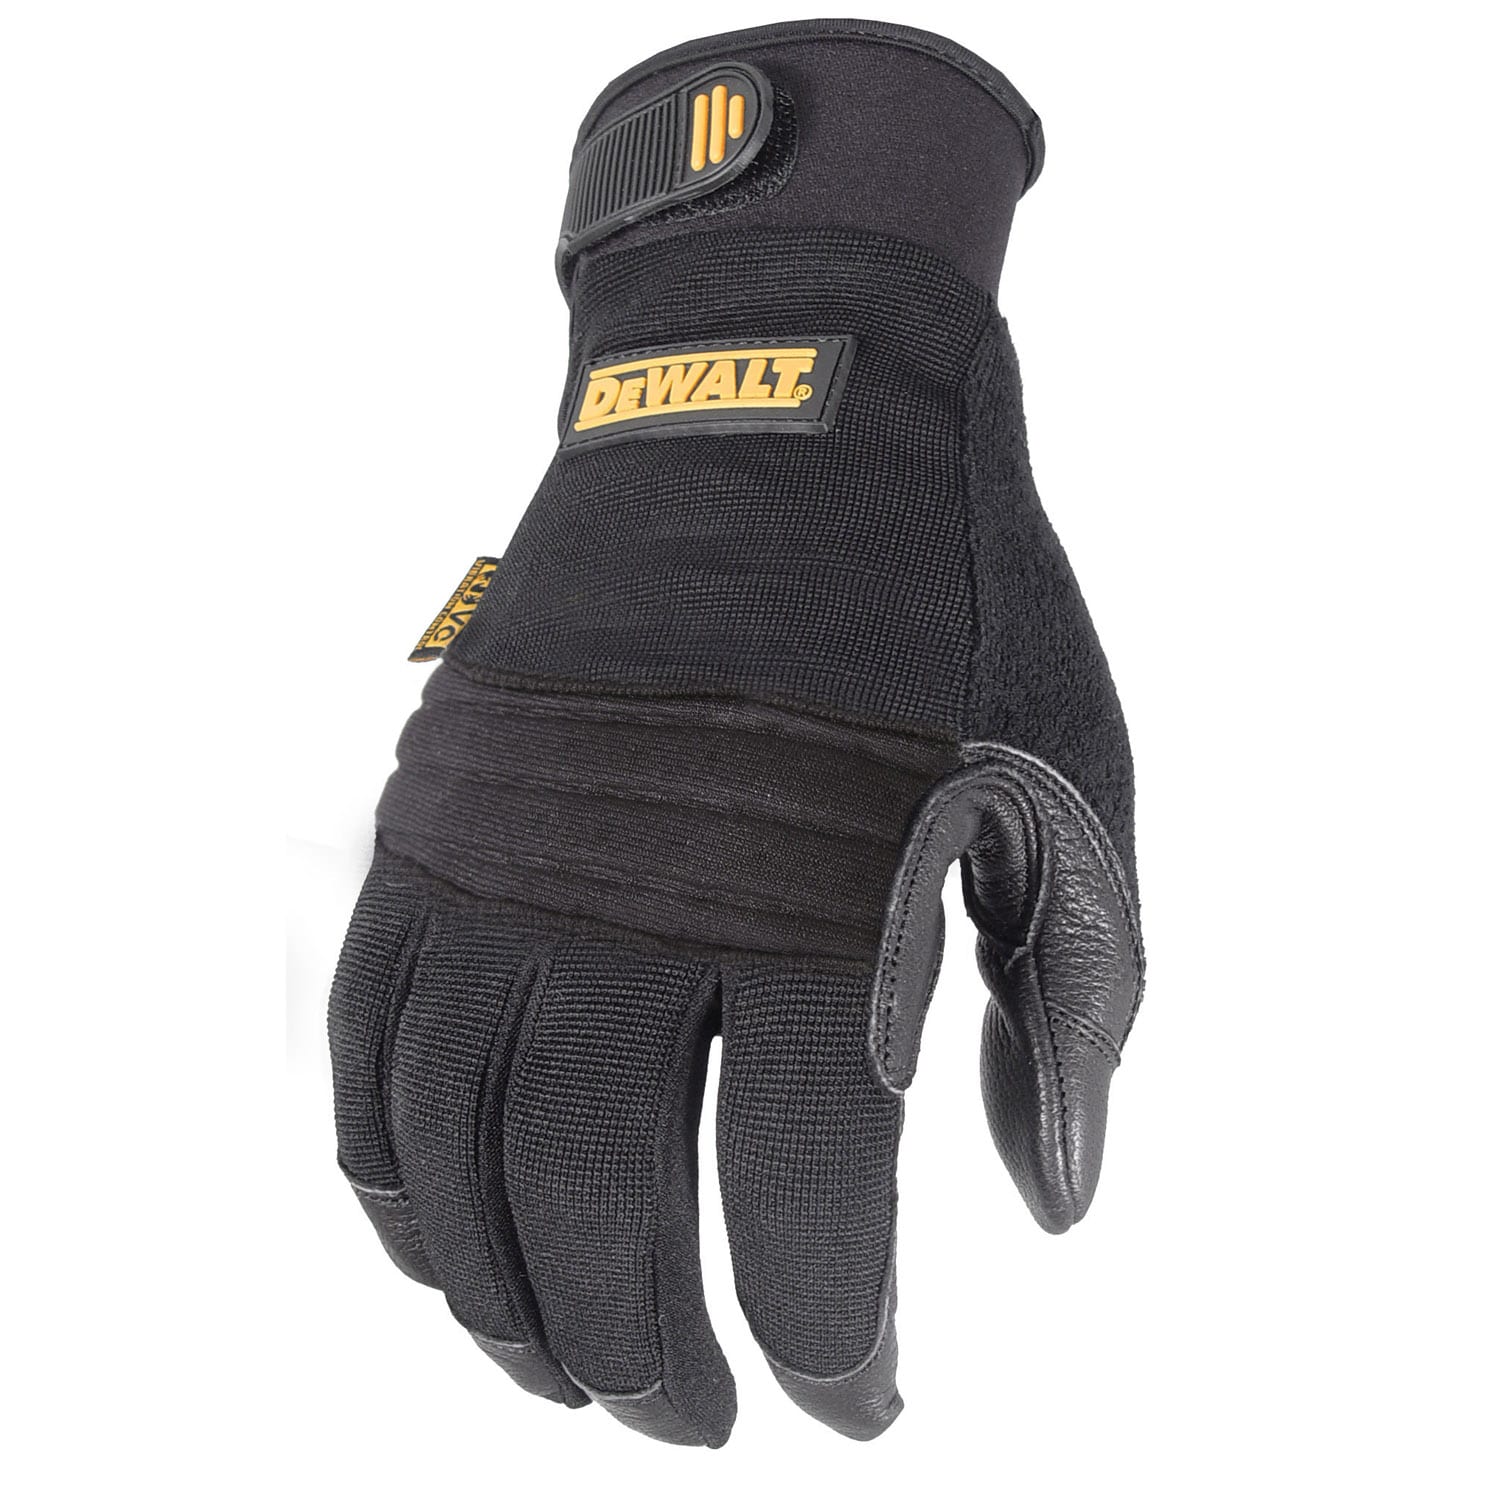 DeWalt DPG72 Flexible Durable Grip Work Glove XL